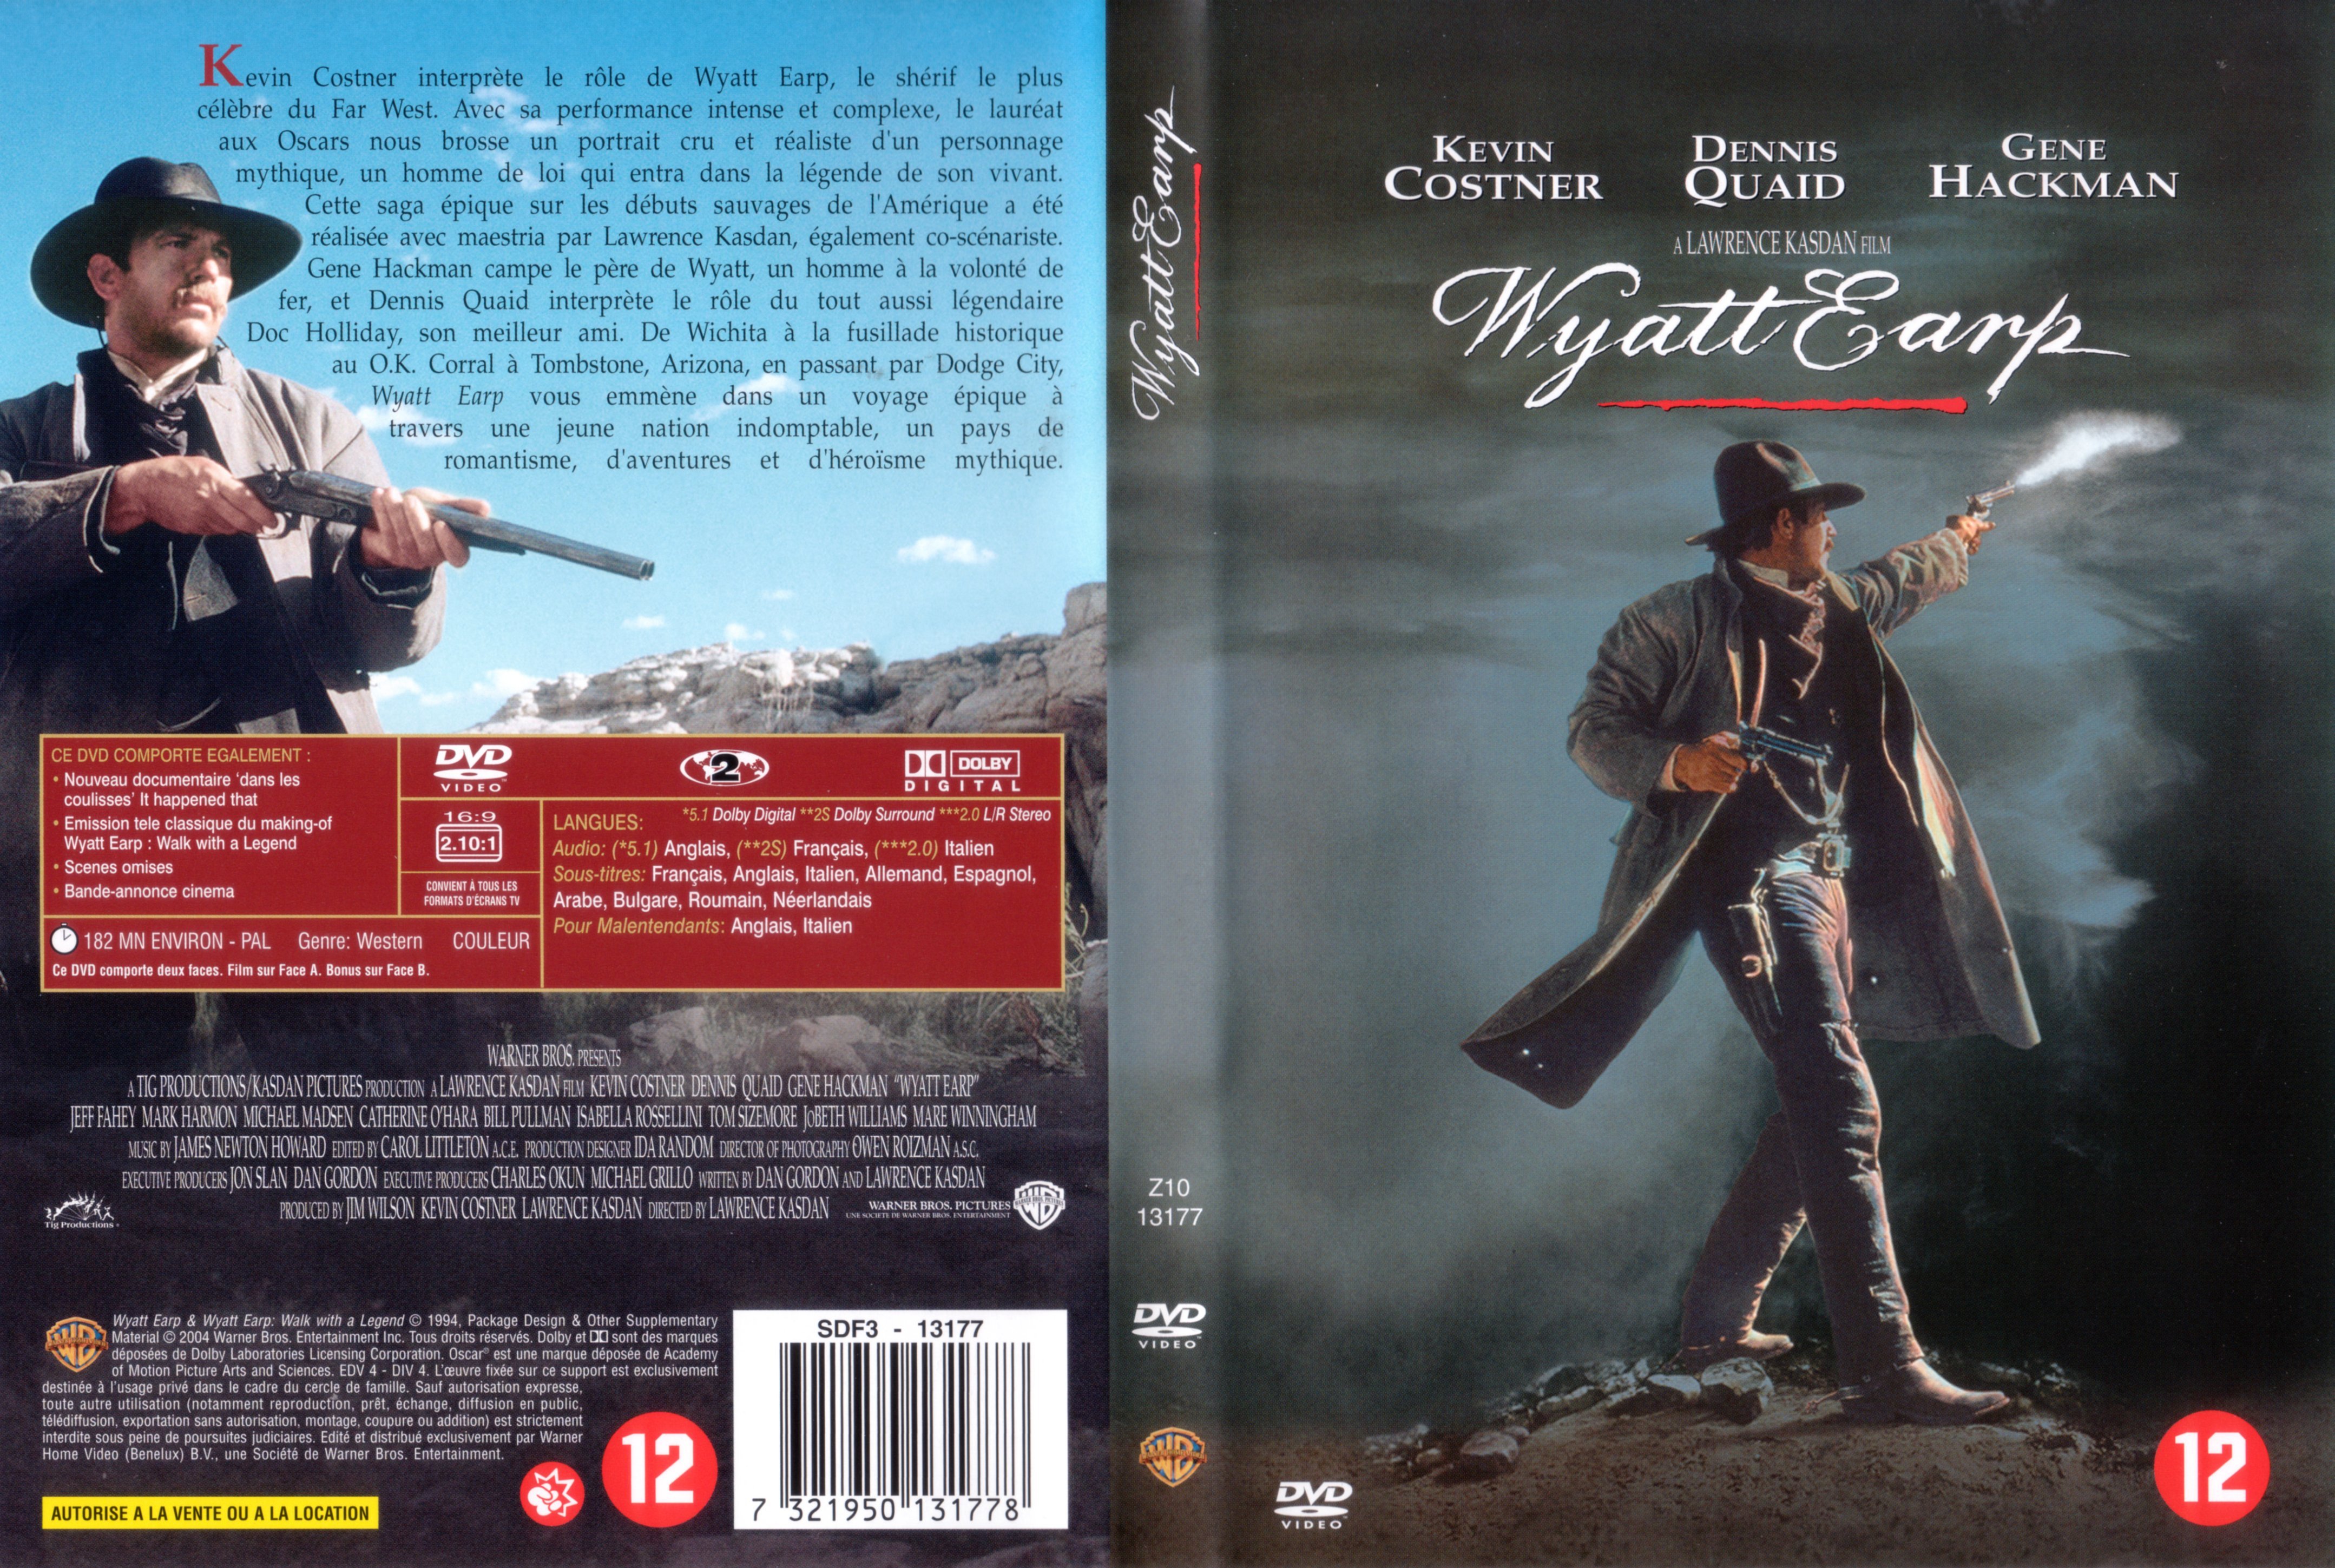 Jaquette DVD Wyatt Earp v3